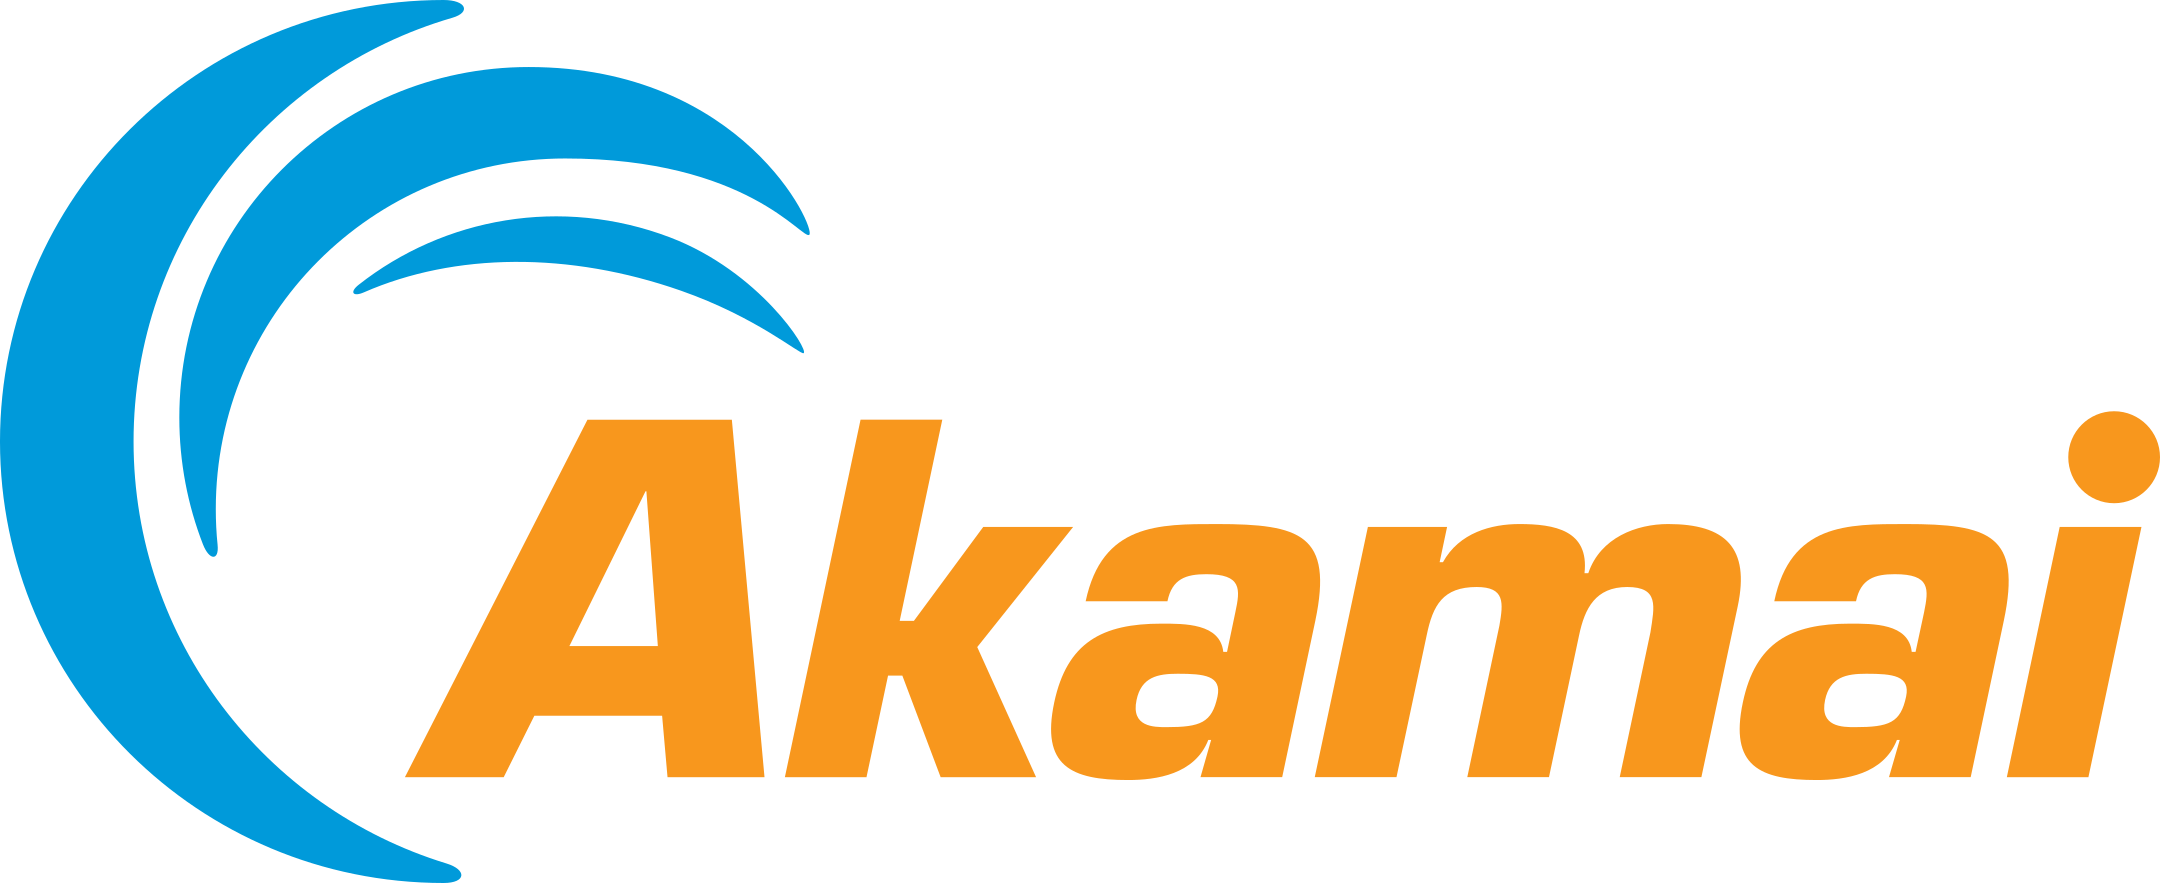 akamai logo 1 1 - Akamai Logo